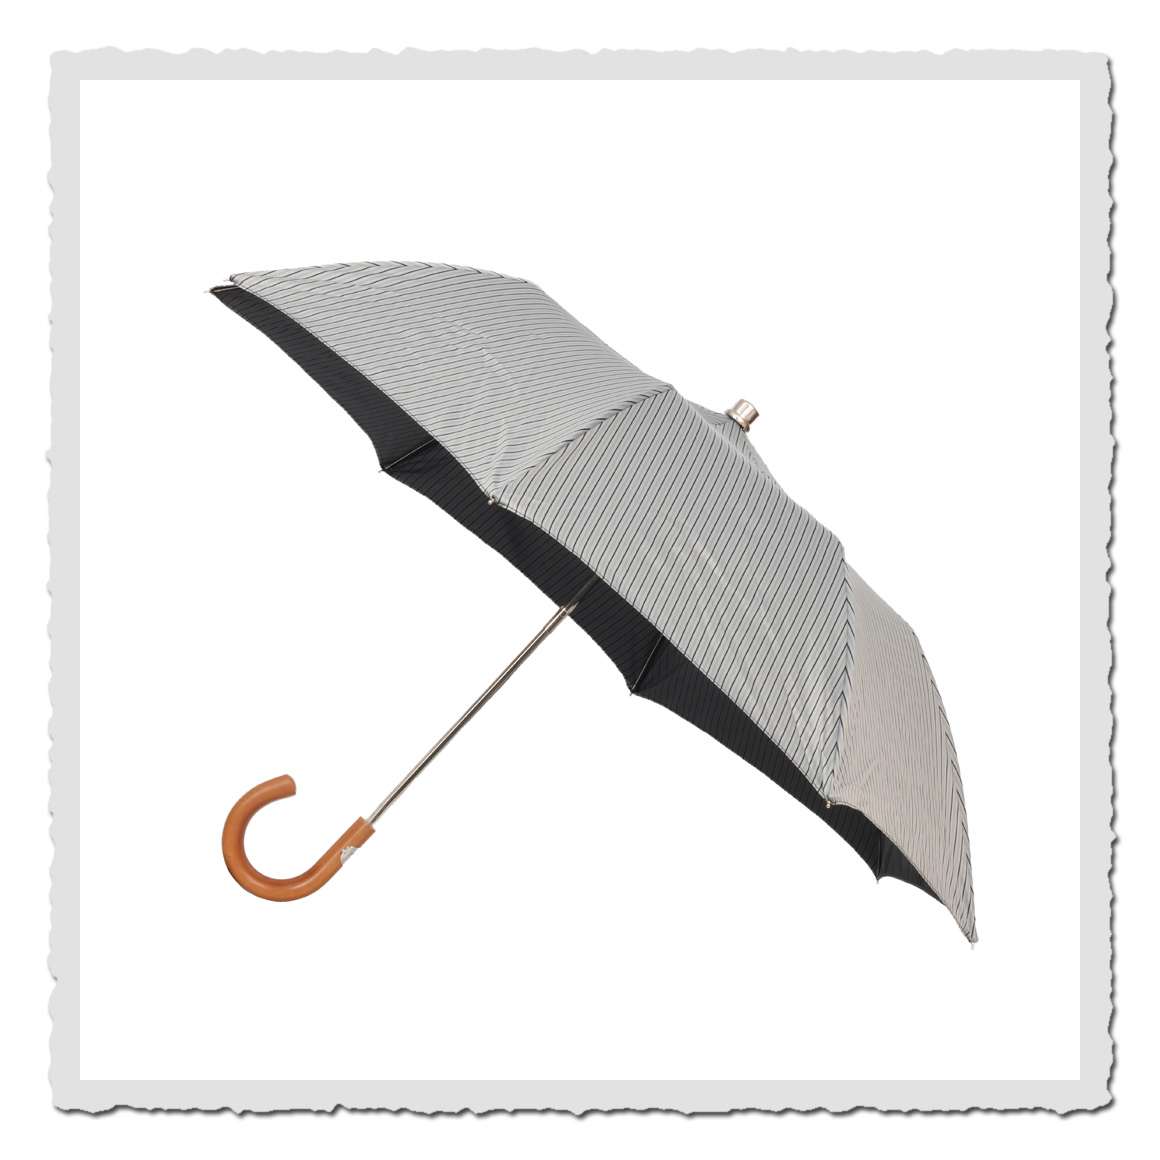 Taschen-Regenschirm Borsa hellgrau/schwarz